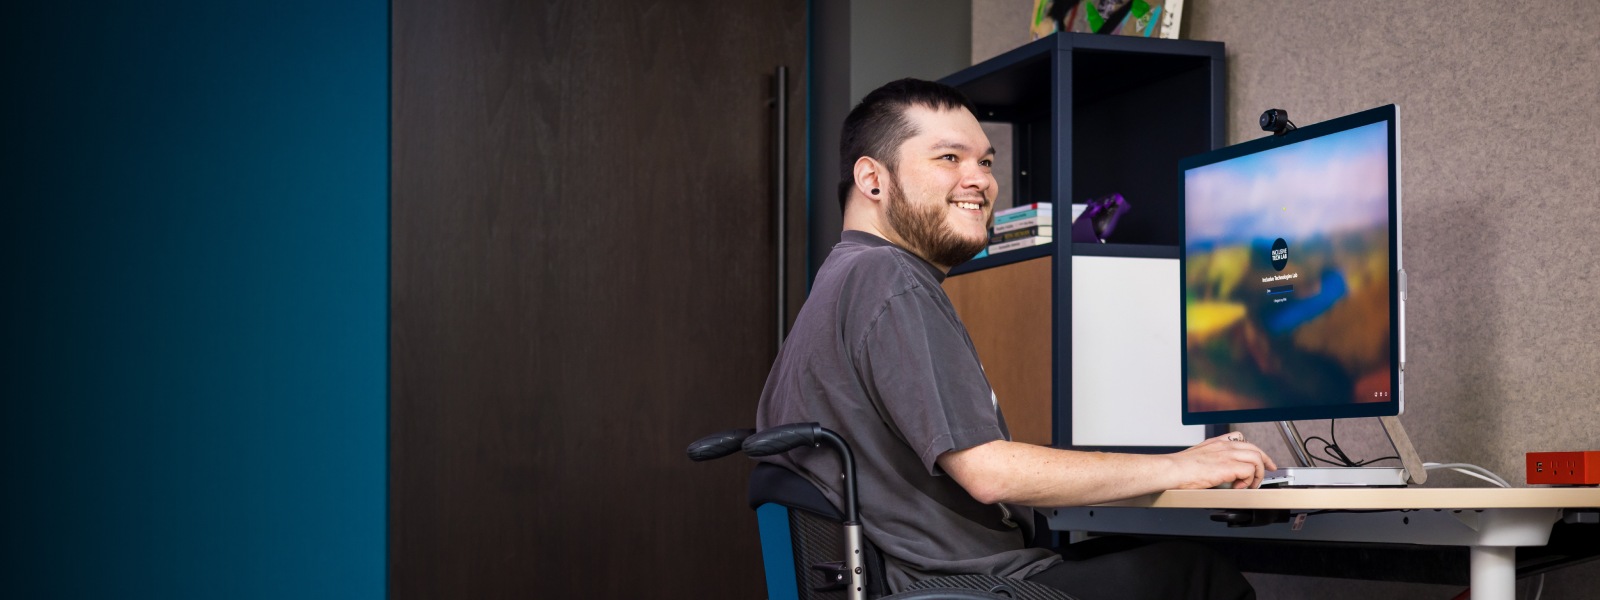 Una persona sonriente en una silla de ruedas trabaja con su escritorio.